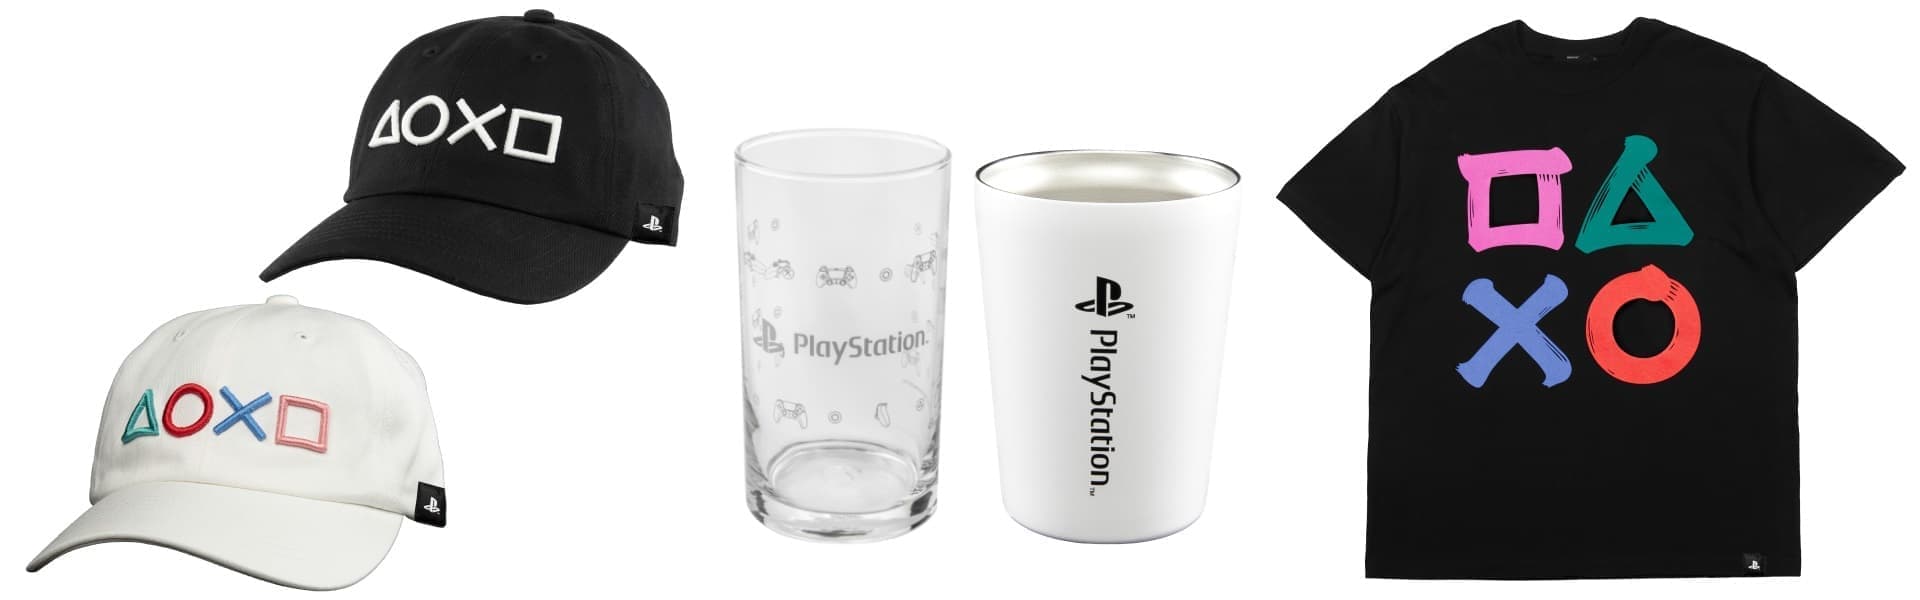 『どこでもいっしょ』『サルゲッチュ』のマグカップ、「PlayStation」のタンブラー、グラスなどが登場。5月14日から展開_004